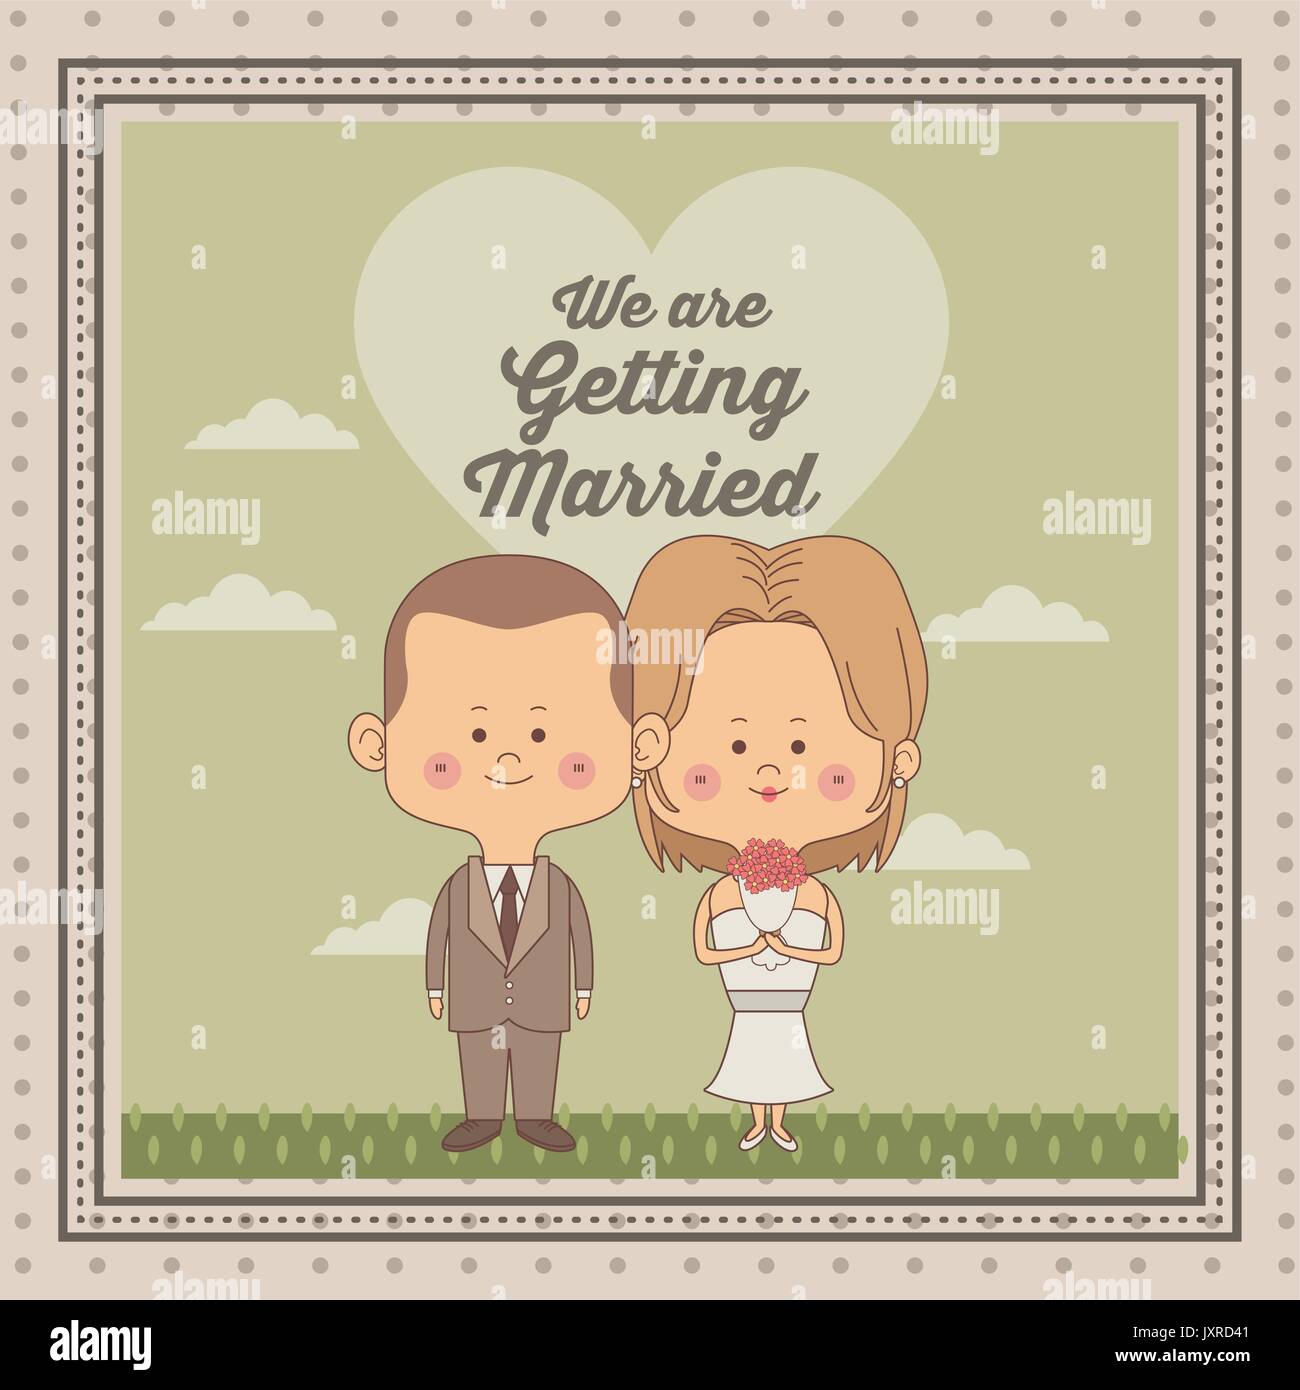 Grußkarte der Szene himmel landschaft mit dekorativen Rahmen der frisch verheiratete Ehepaar Braut mit blondd Haar und Bräutigam mit Haarschnitt Stock Vektor